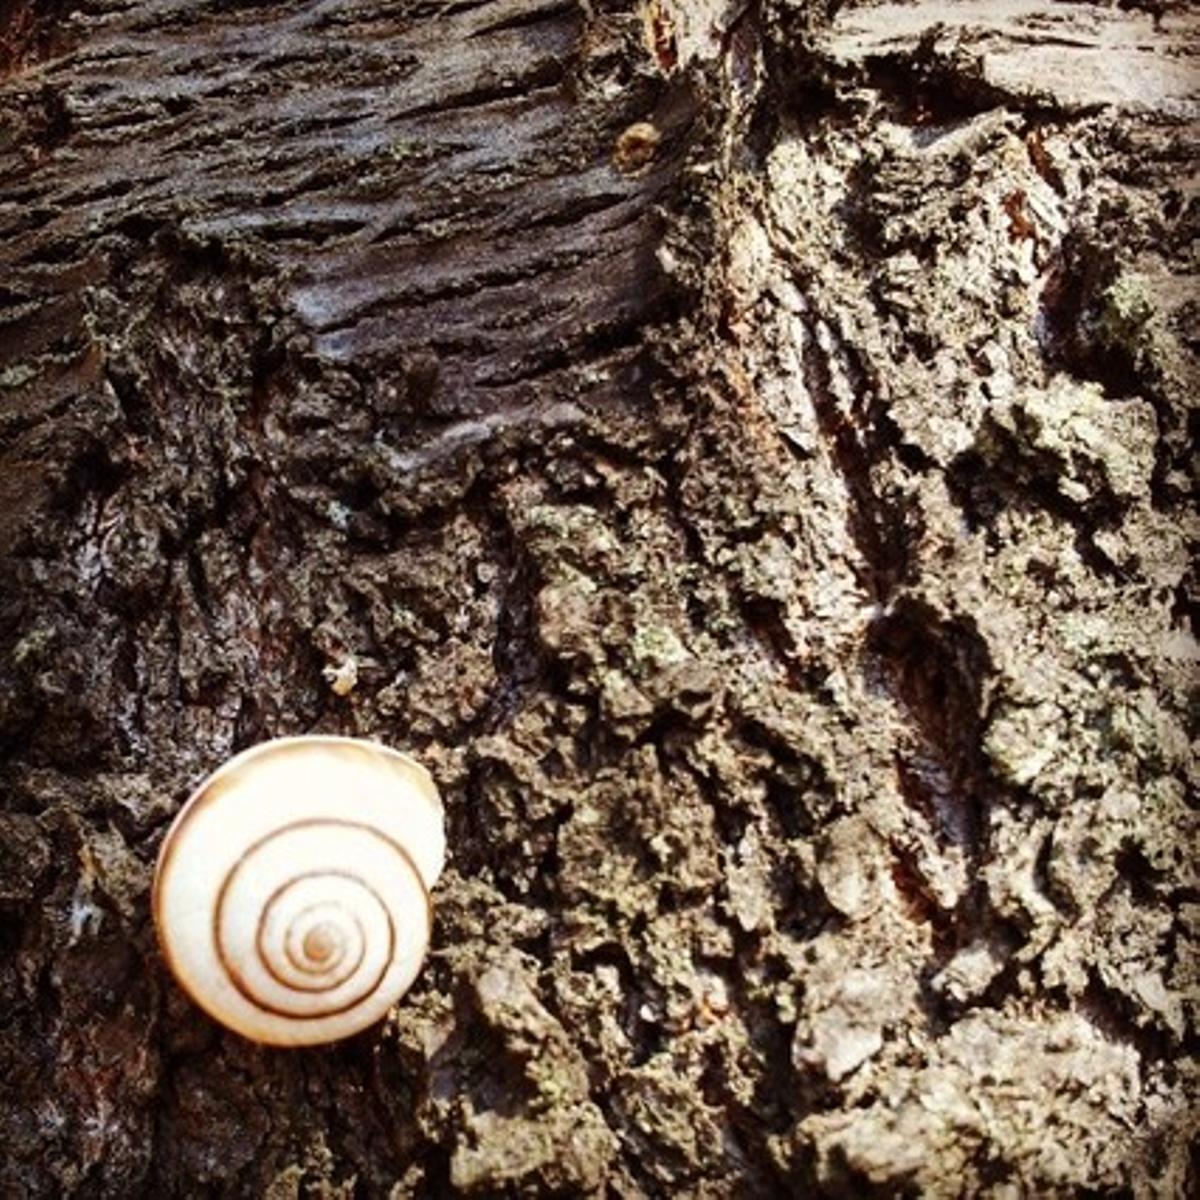 Un caracol quieto en un tronco.